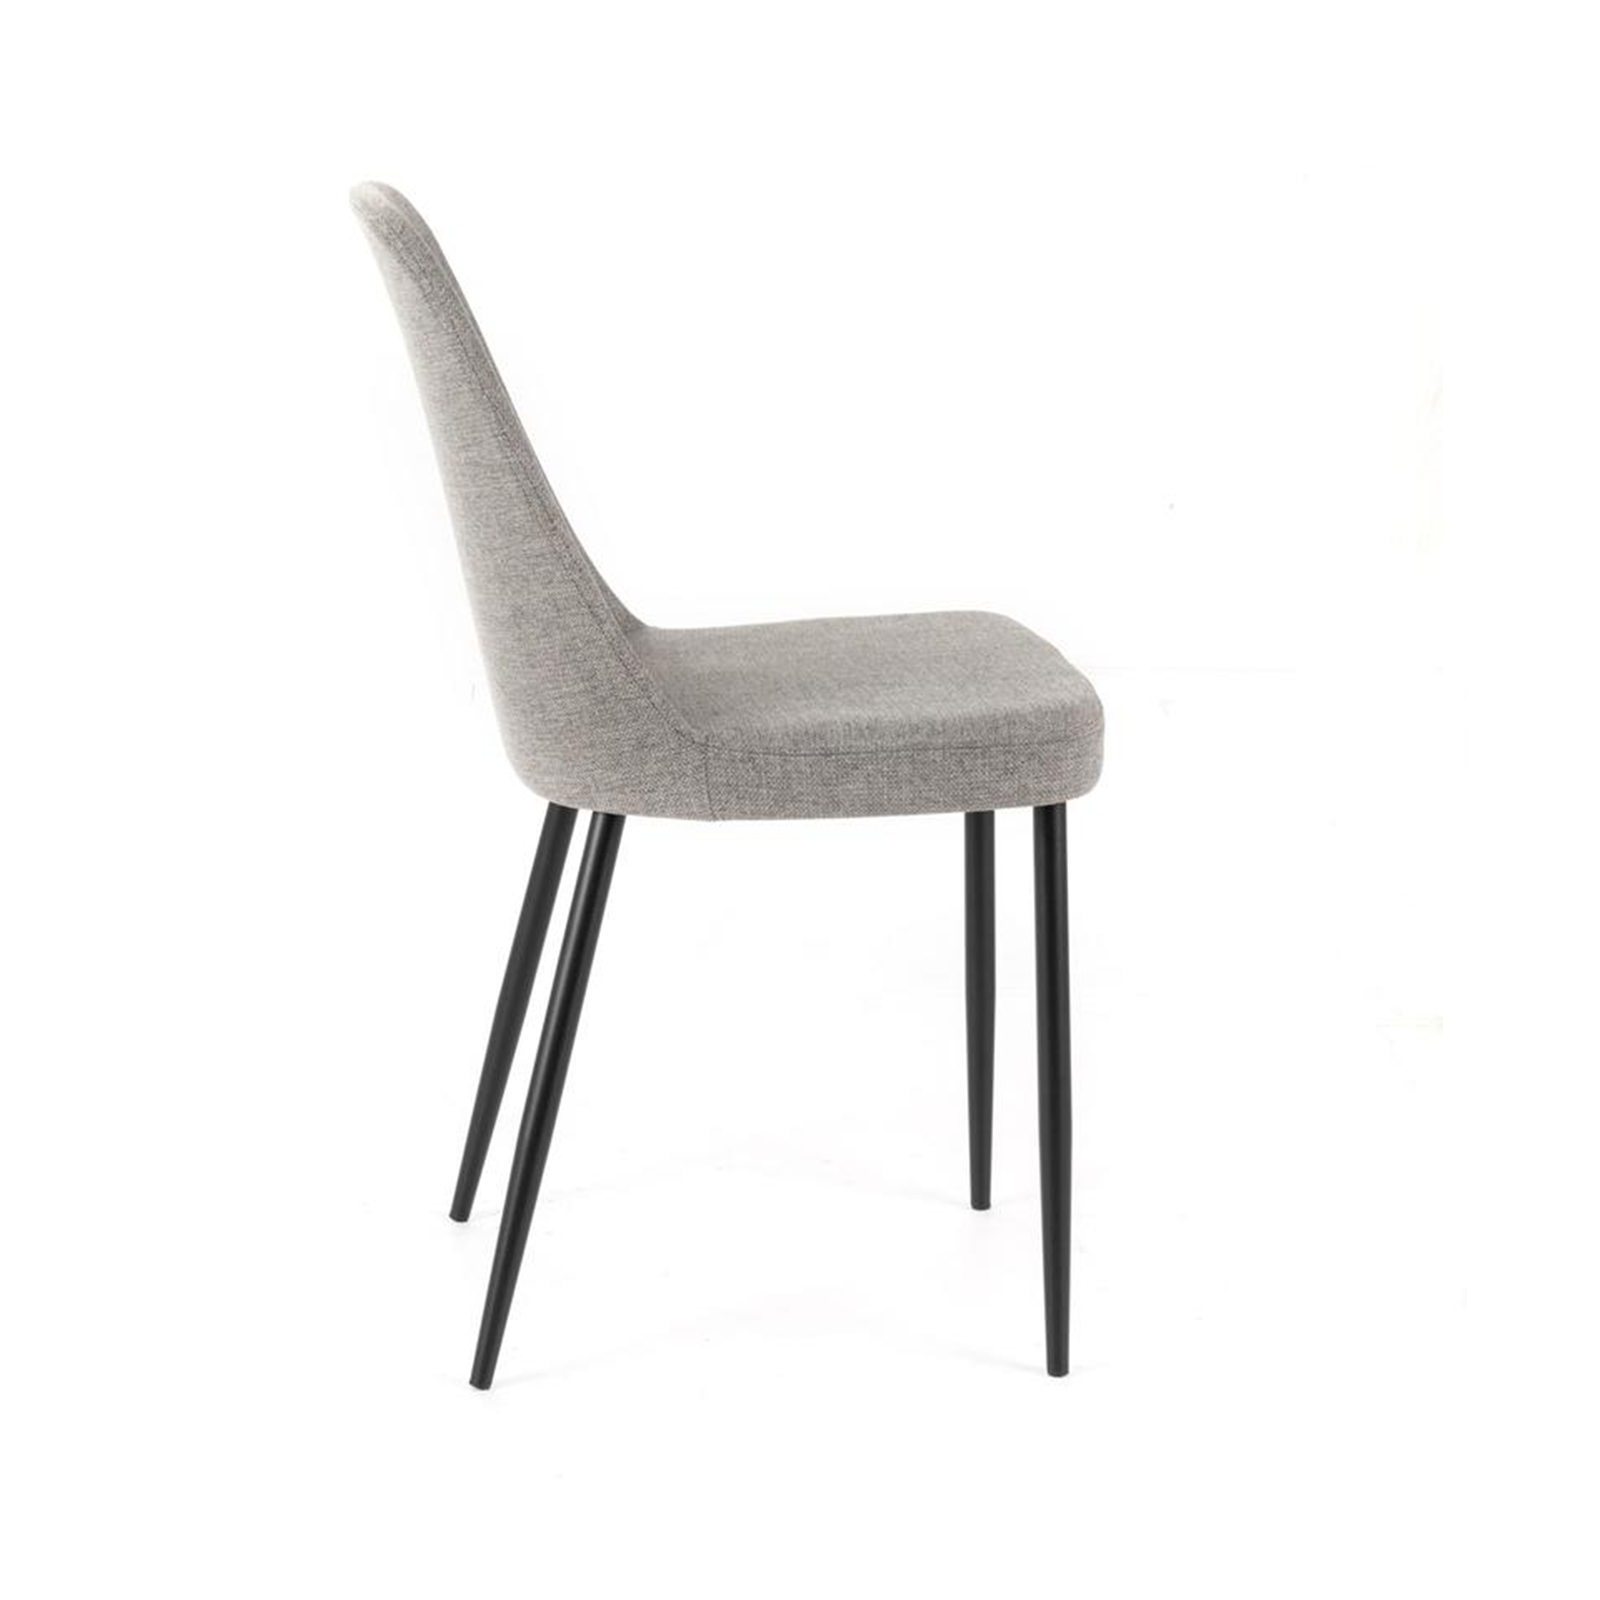 Set di sedie moderne in tessuto "Giglio" con gambe in metallo verniciato eleganti